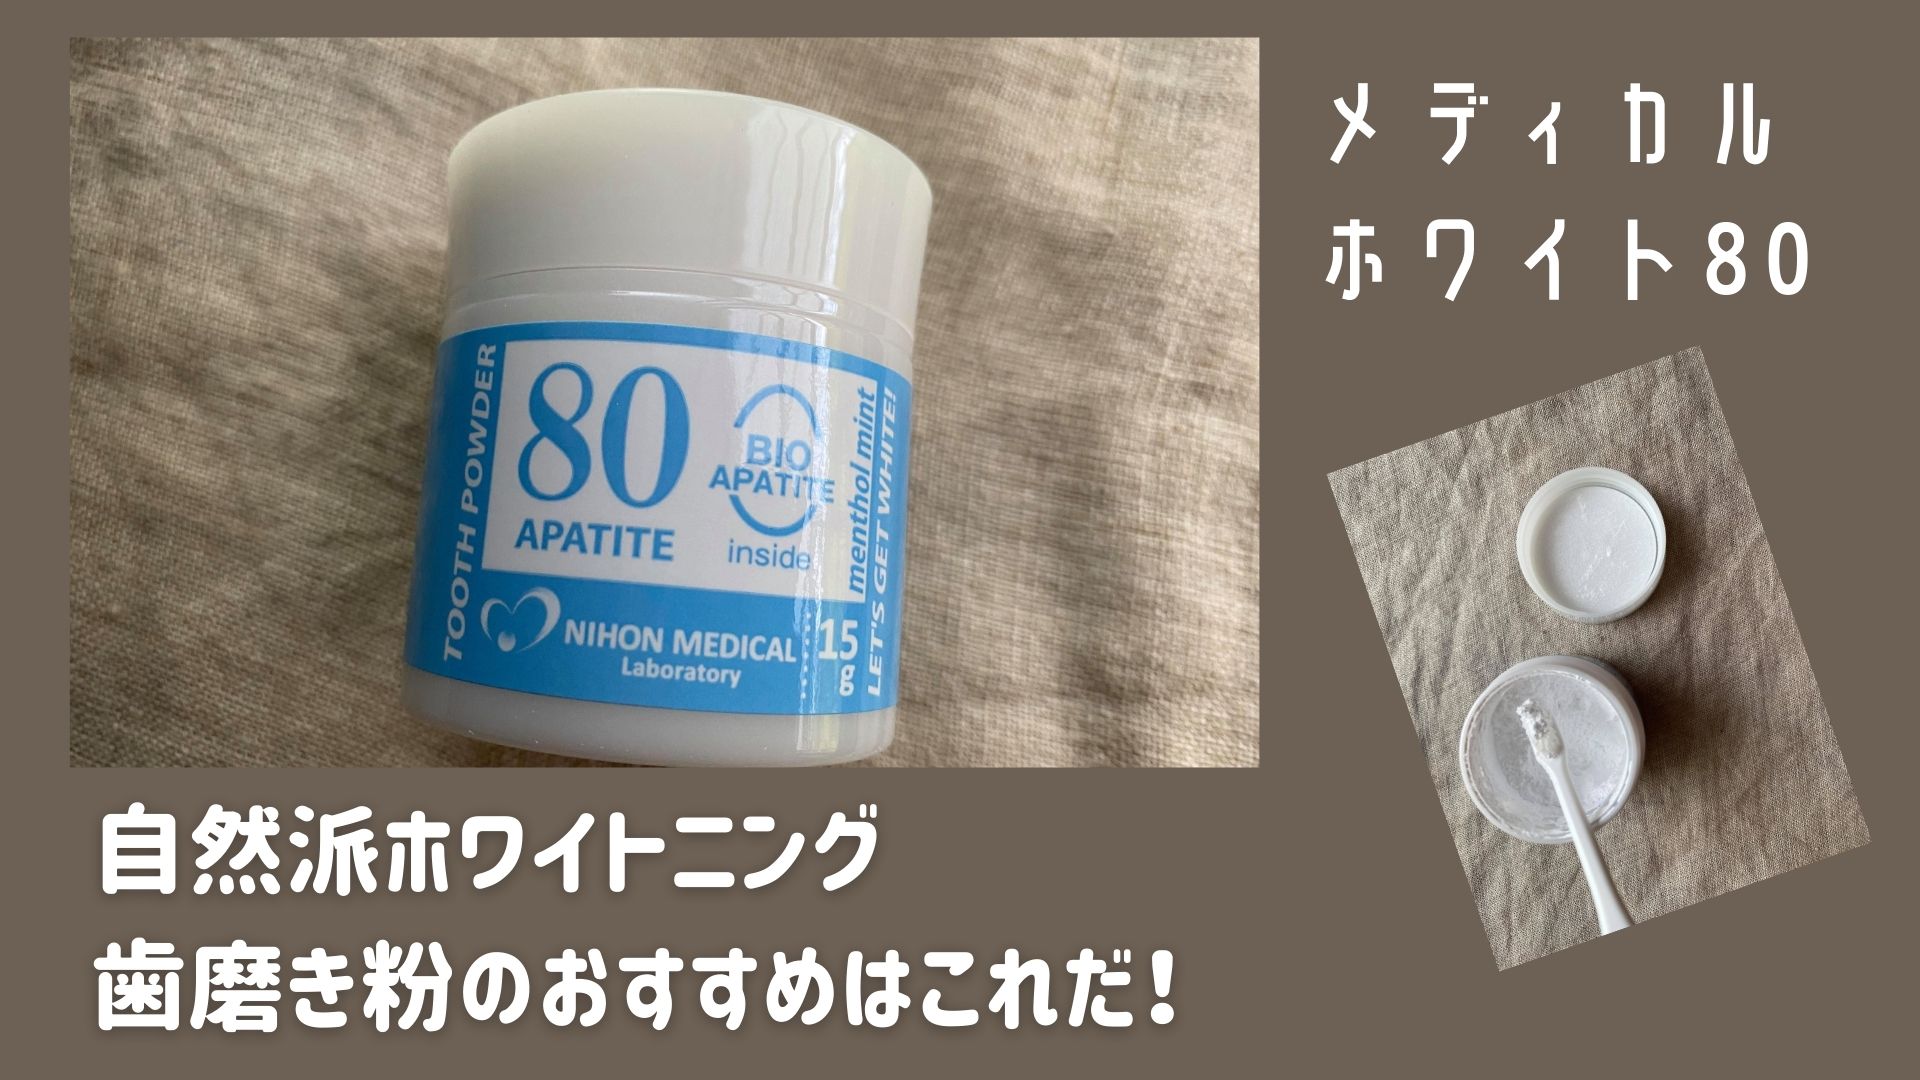 磨き上げスッキリ 自然派素材でホワイトニングができる 日本メディカル研究所の歯磨き粉 メディカルホワイト80 口コミ セイカの暮らし便り